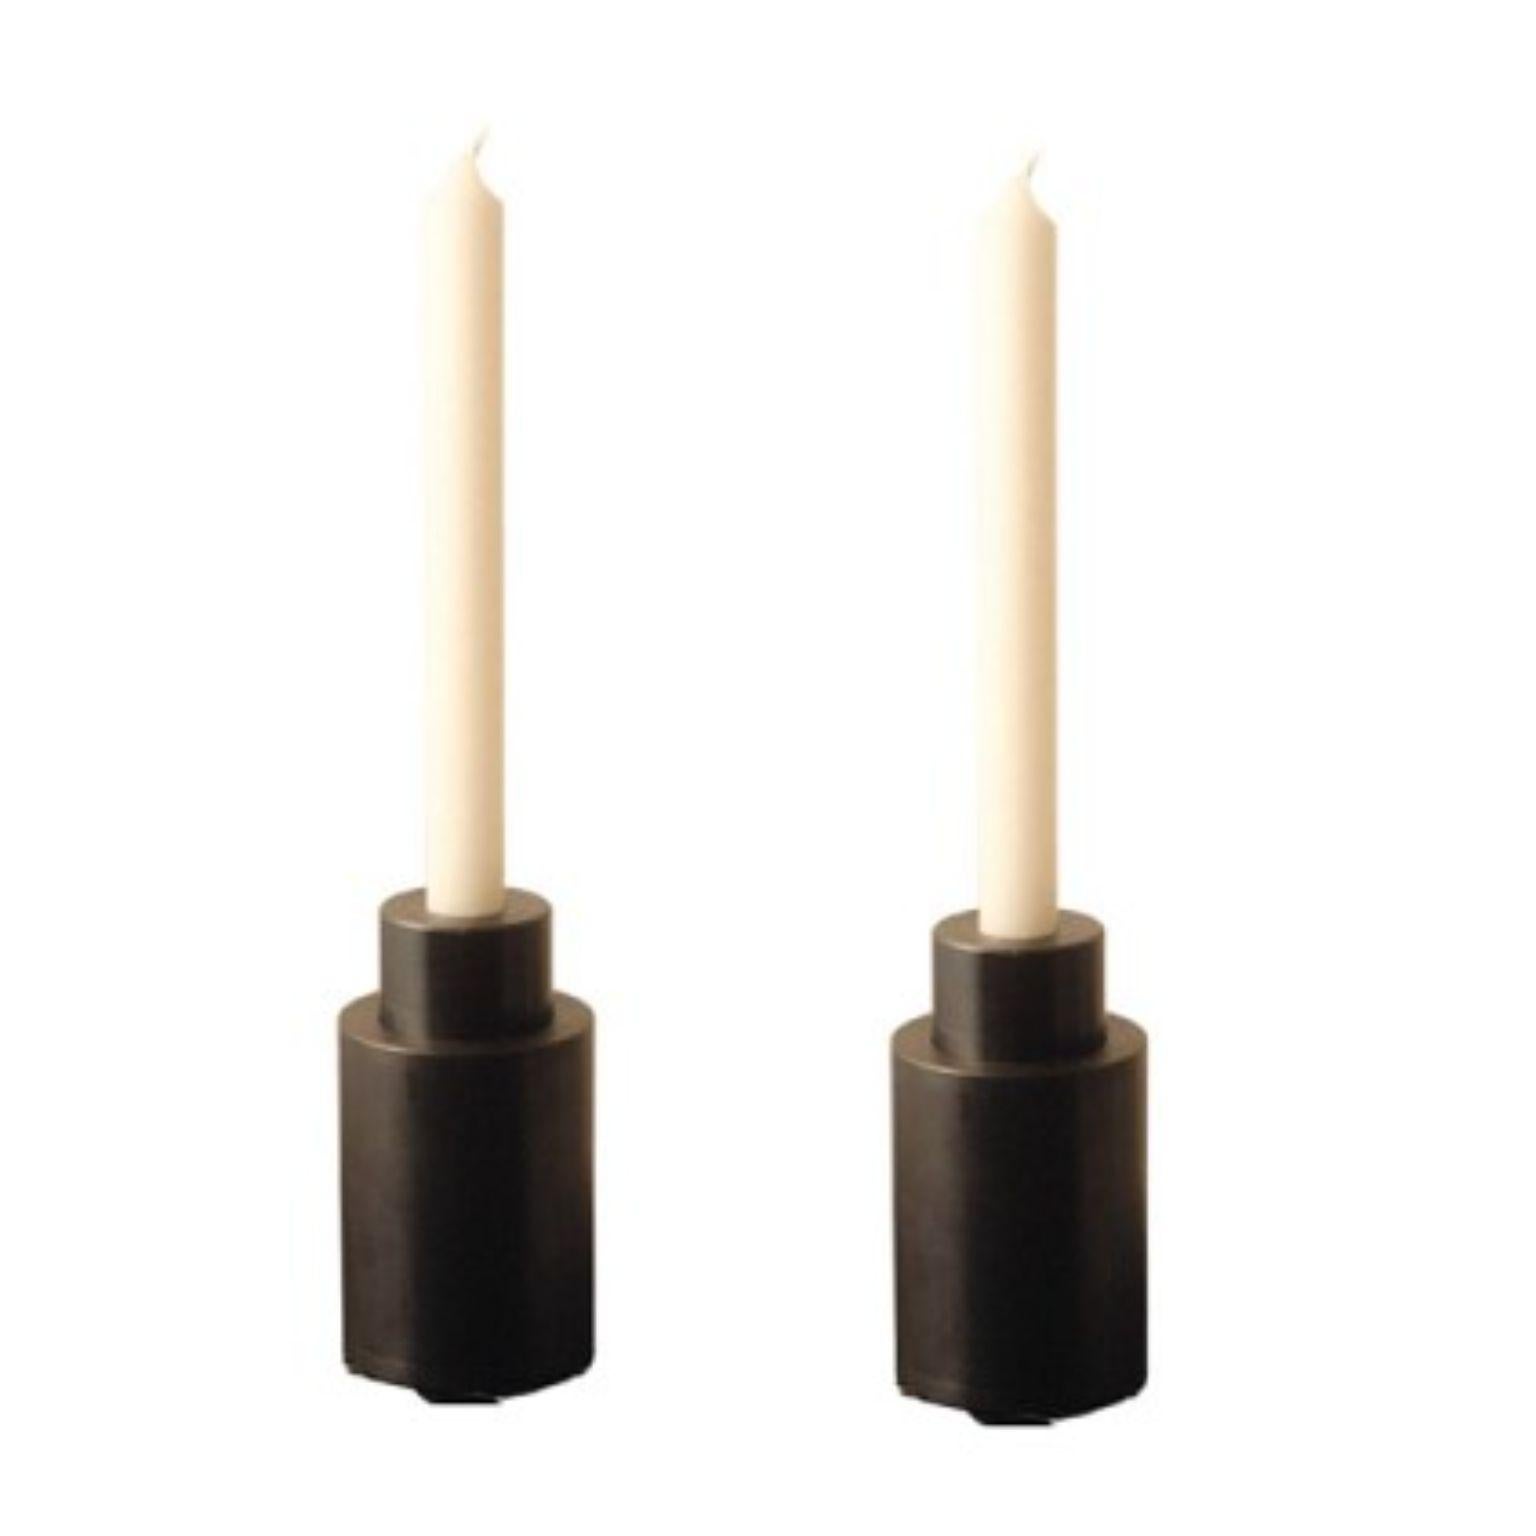 2er set stahl zwischen kerzenhaltern by Radu Abraham
MATERIALIEN: Stahl
Abmessungen: D 6 x H 10 cm

2-teiliger Kerzenhalter; kann mit verschiedenen Kerzentypen oder mit Standard-Kerzenpillen verwendet werden; wenn man sie voneinander trennt, kann